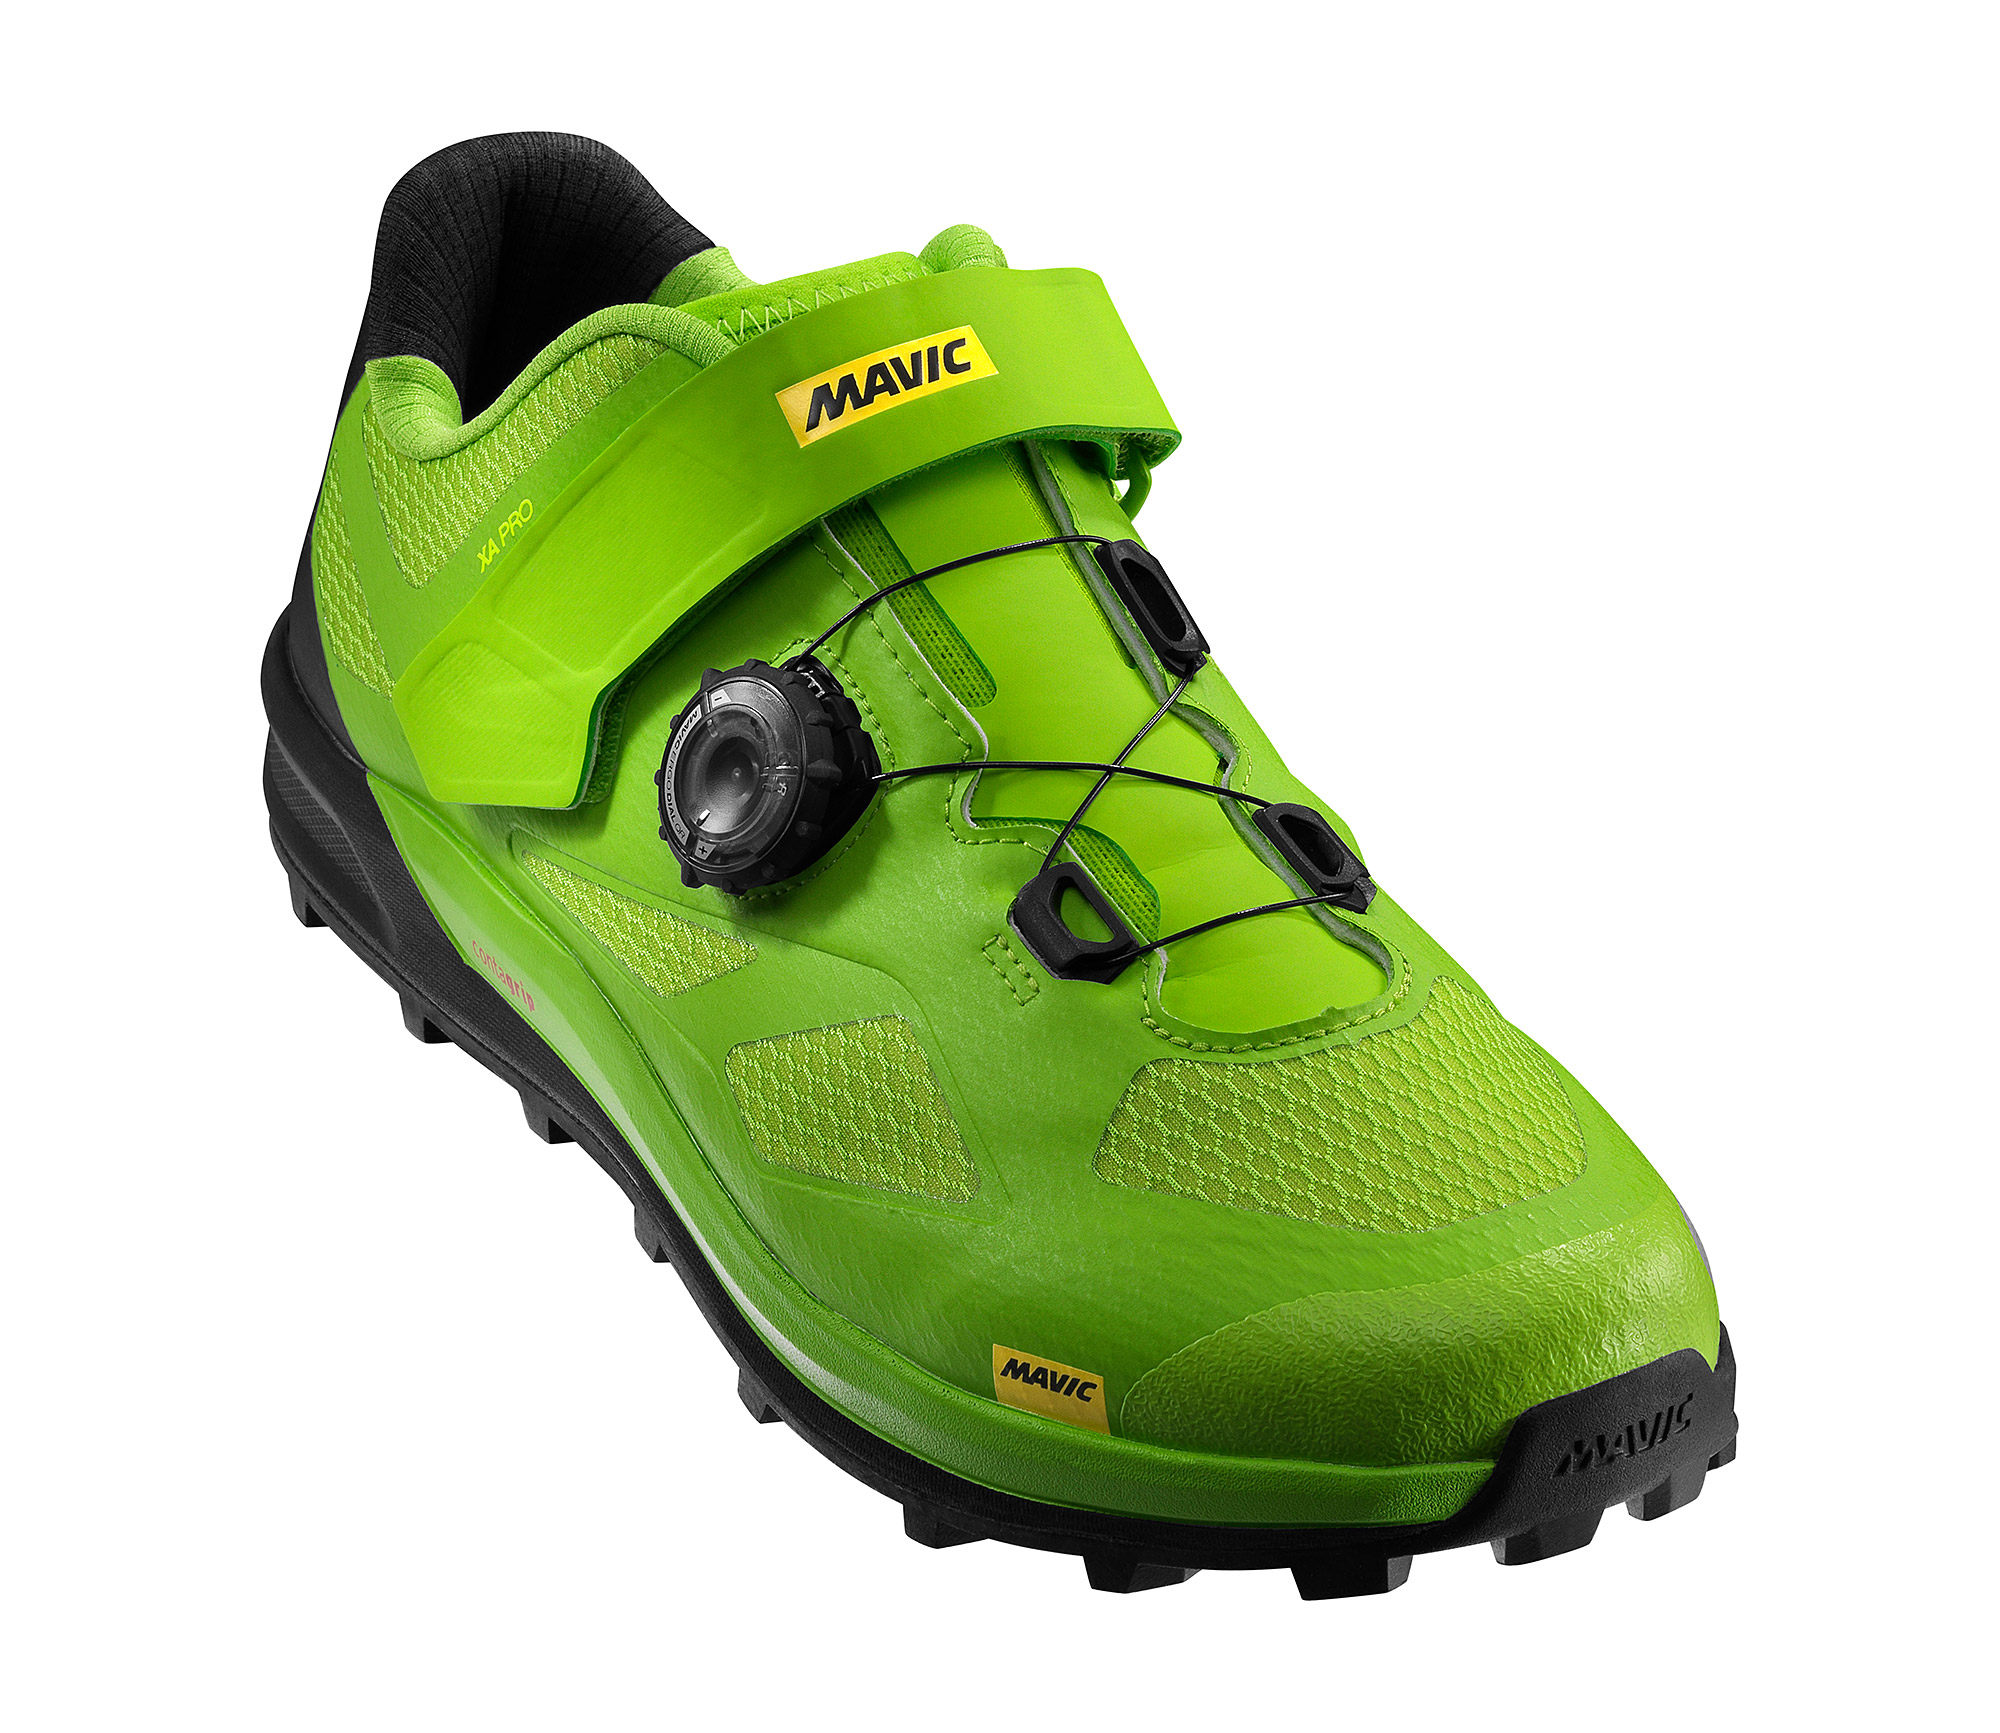 Взуття Mavic XA PRO, розмір UK 7,5 (41 1/3, 261мм) Lime Green/Pirate Black салатово-чорна